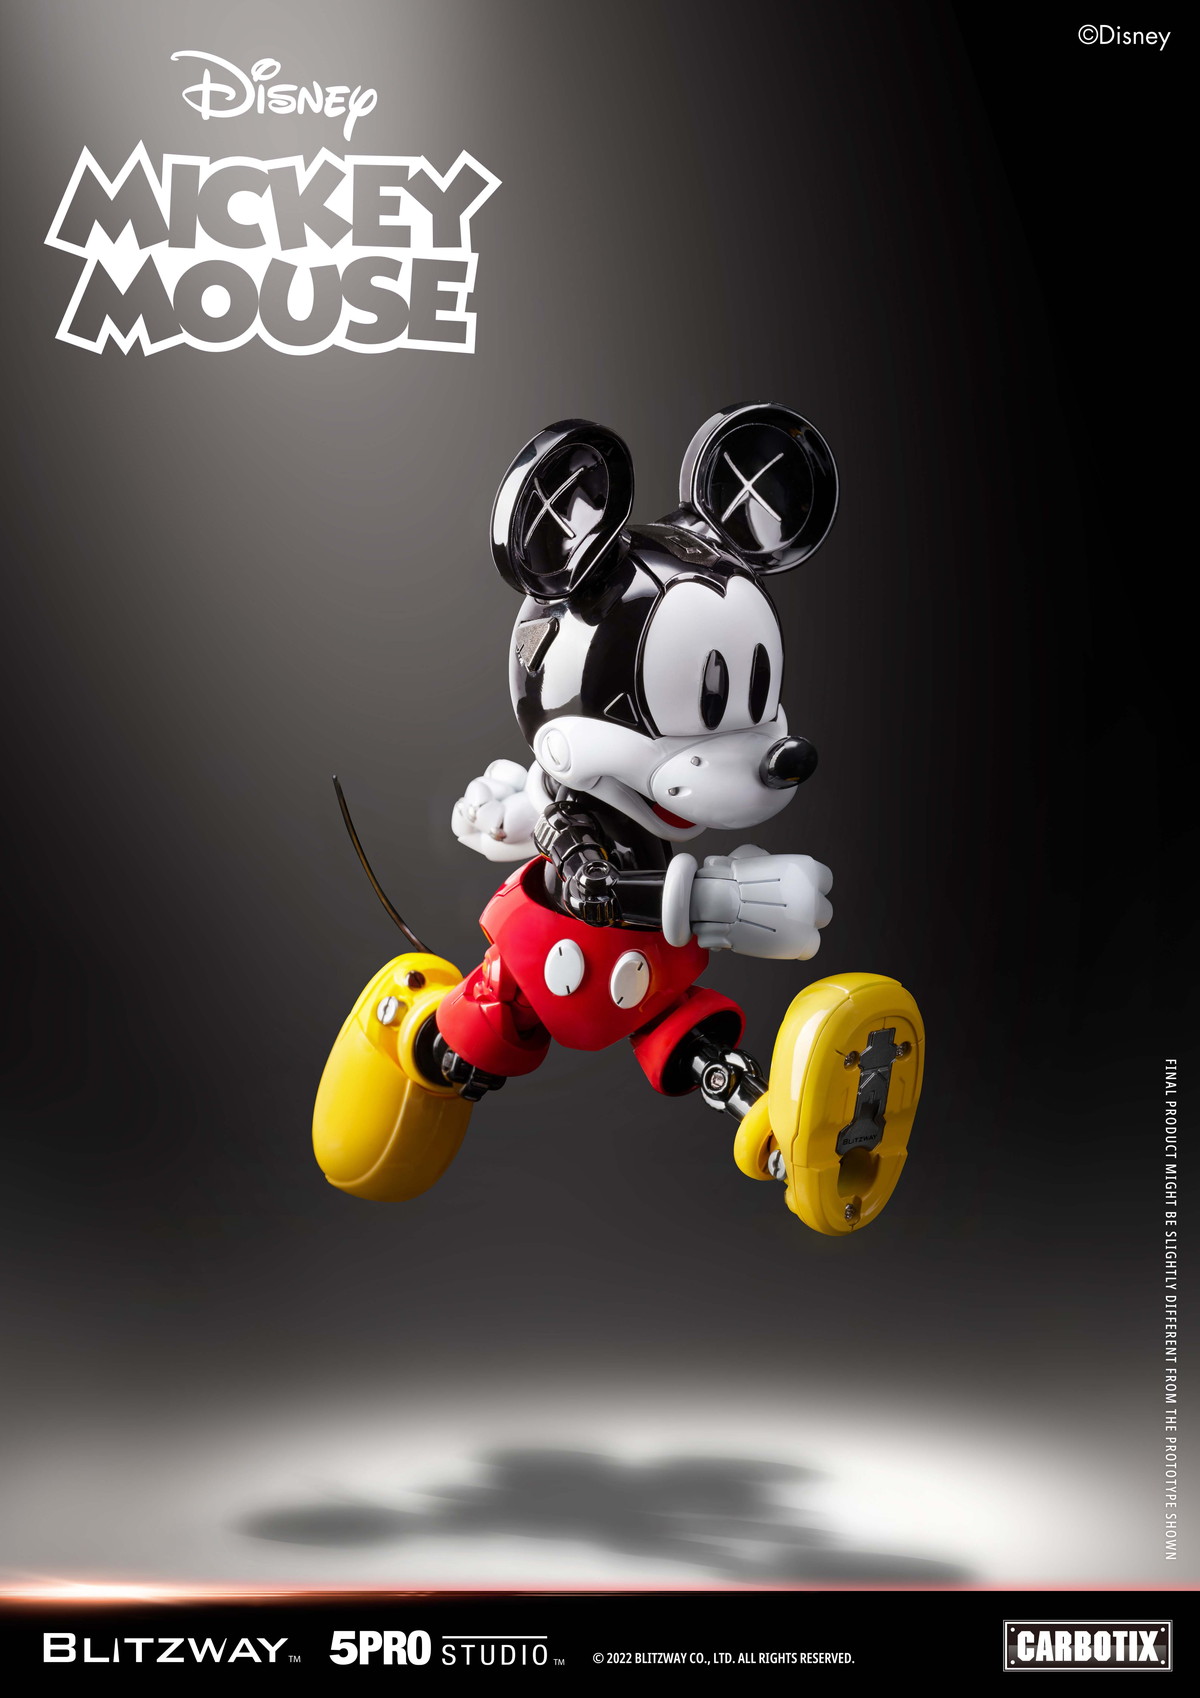 ディズニー「CARBOTIX ミッキーマウス」のフィギュア画像